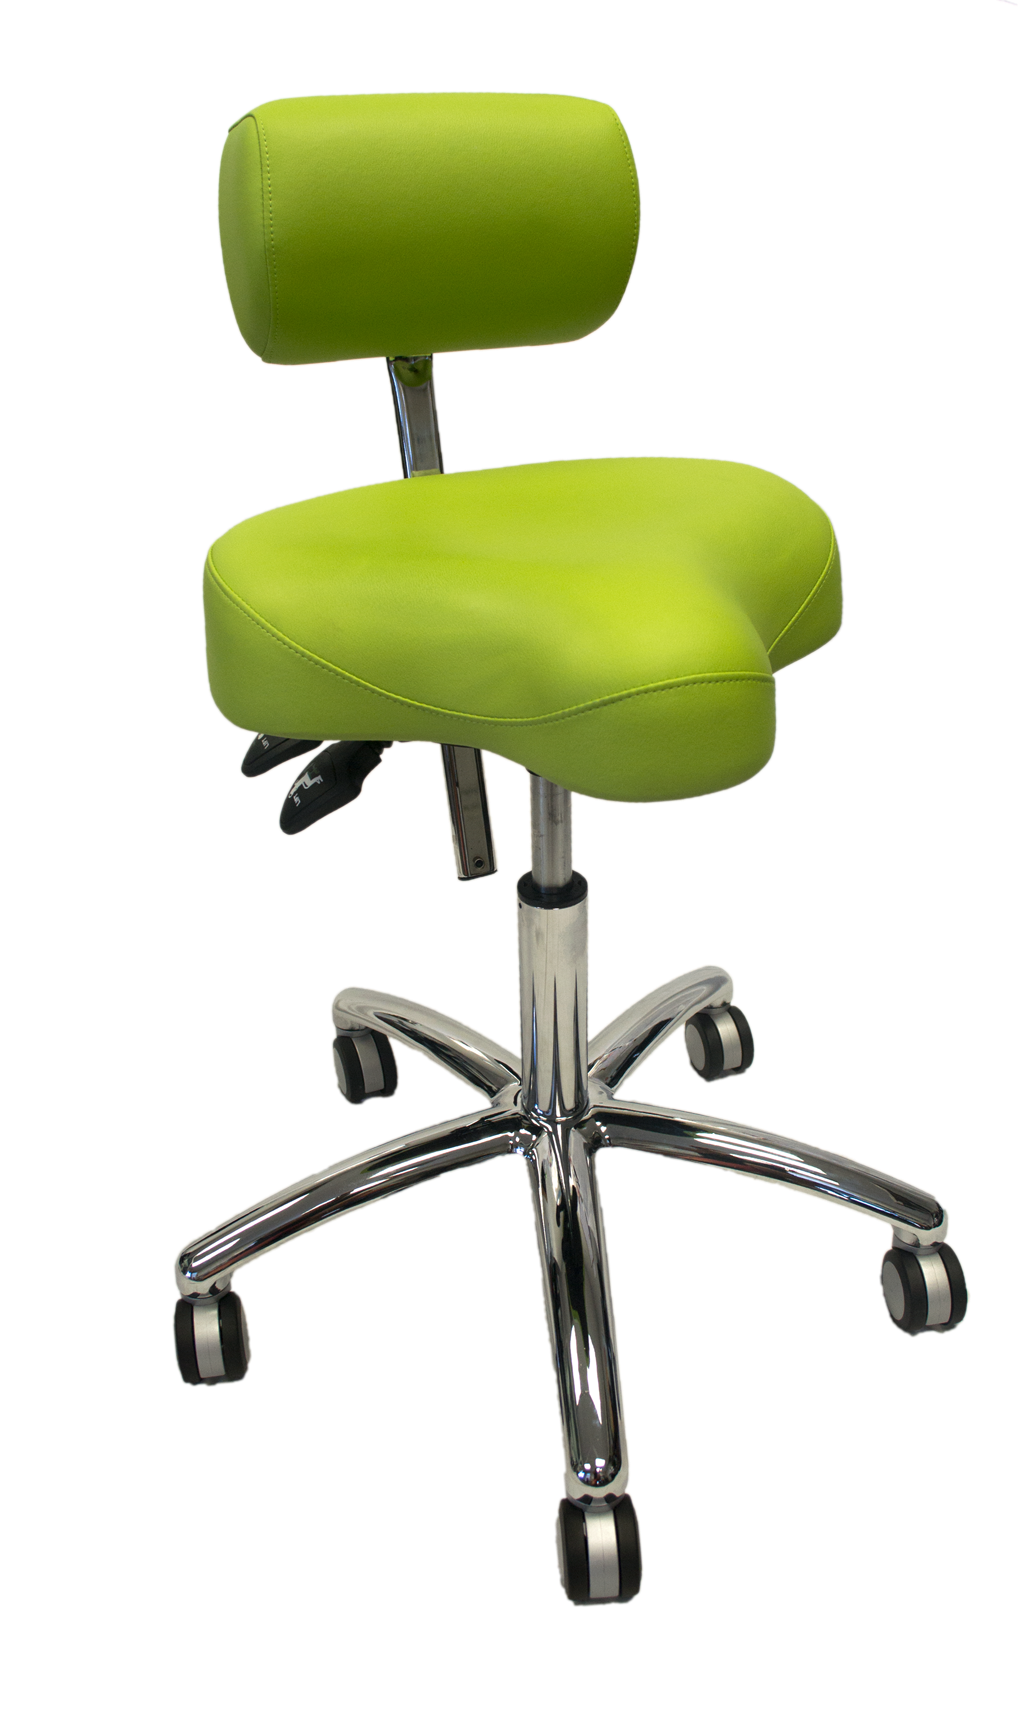 A saddle-style stool